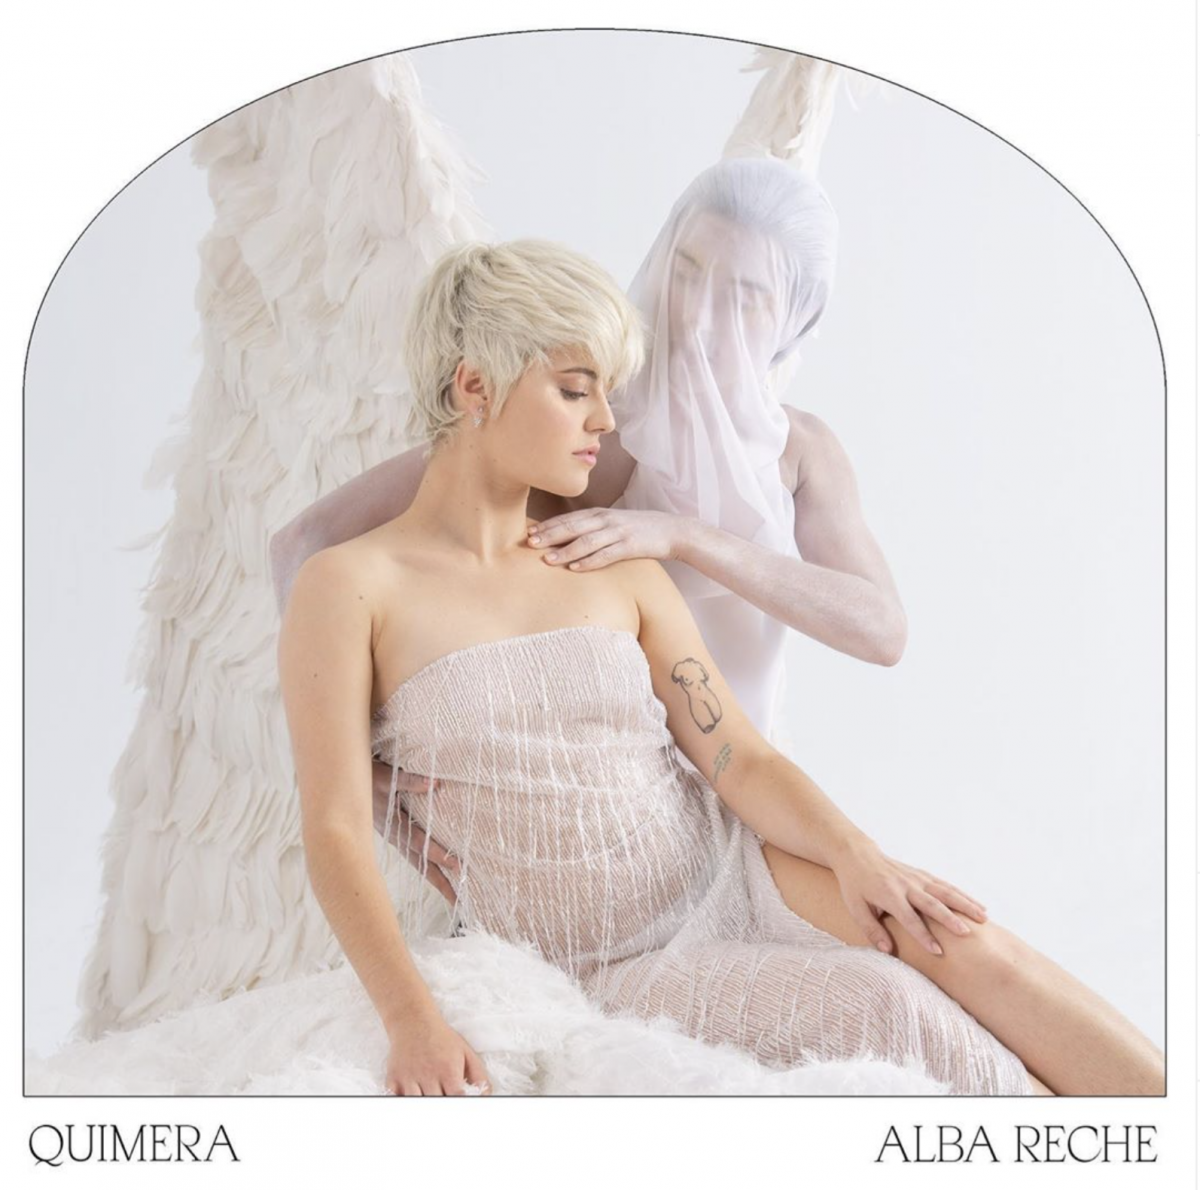 Alba Reche Quimera cover artwork